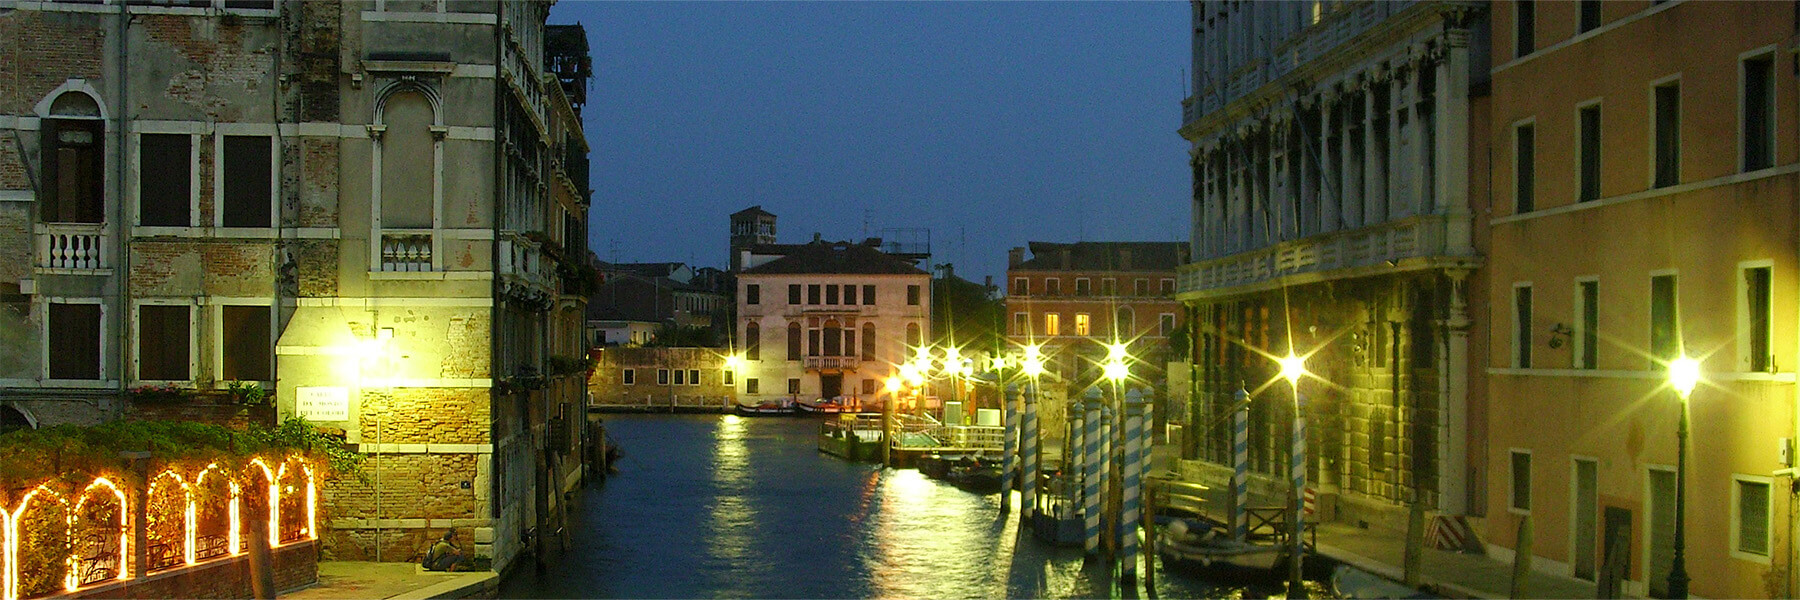 Venice, Italy at night